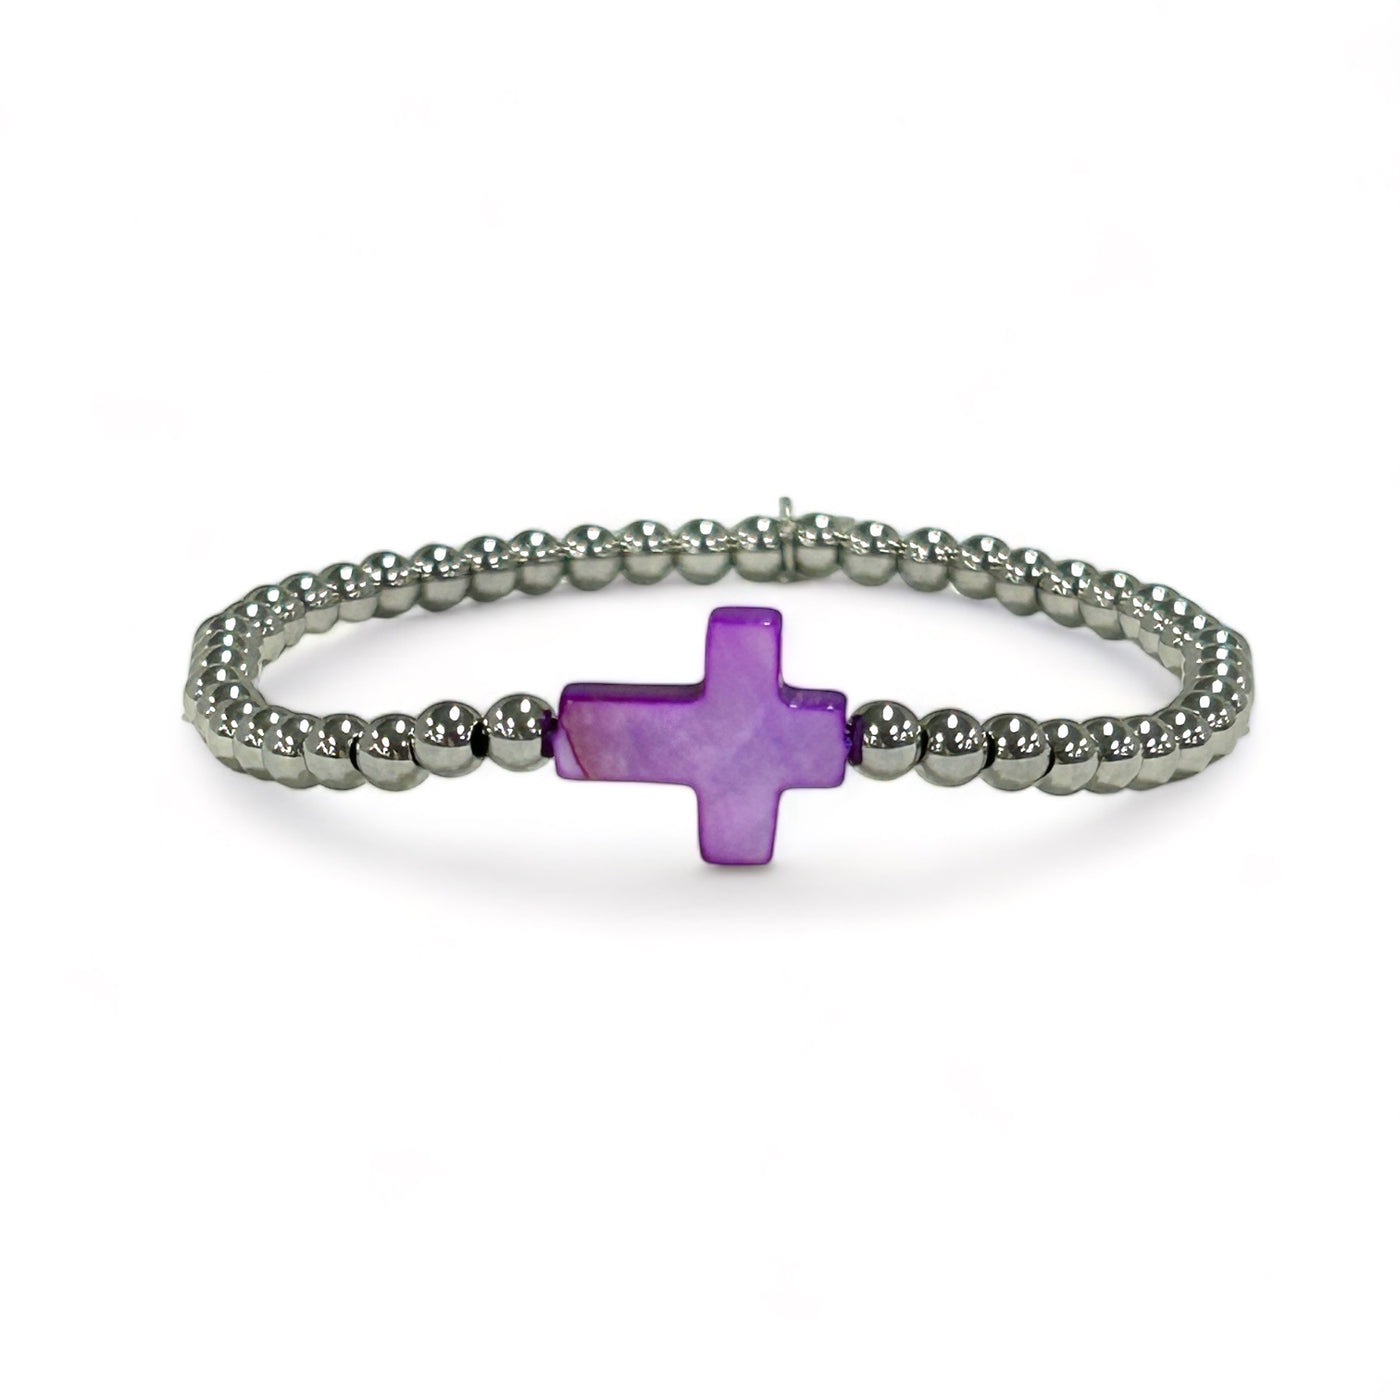 Ireland Mini Sideways Purple Pearl Cross Bracelet with Silver